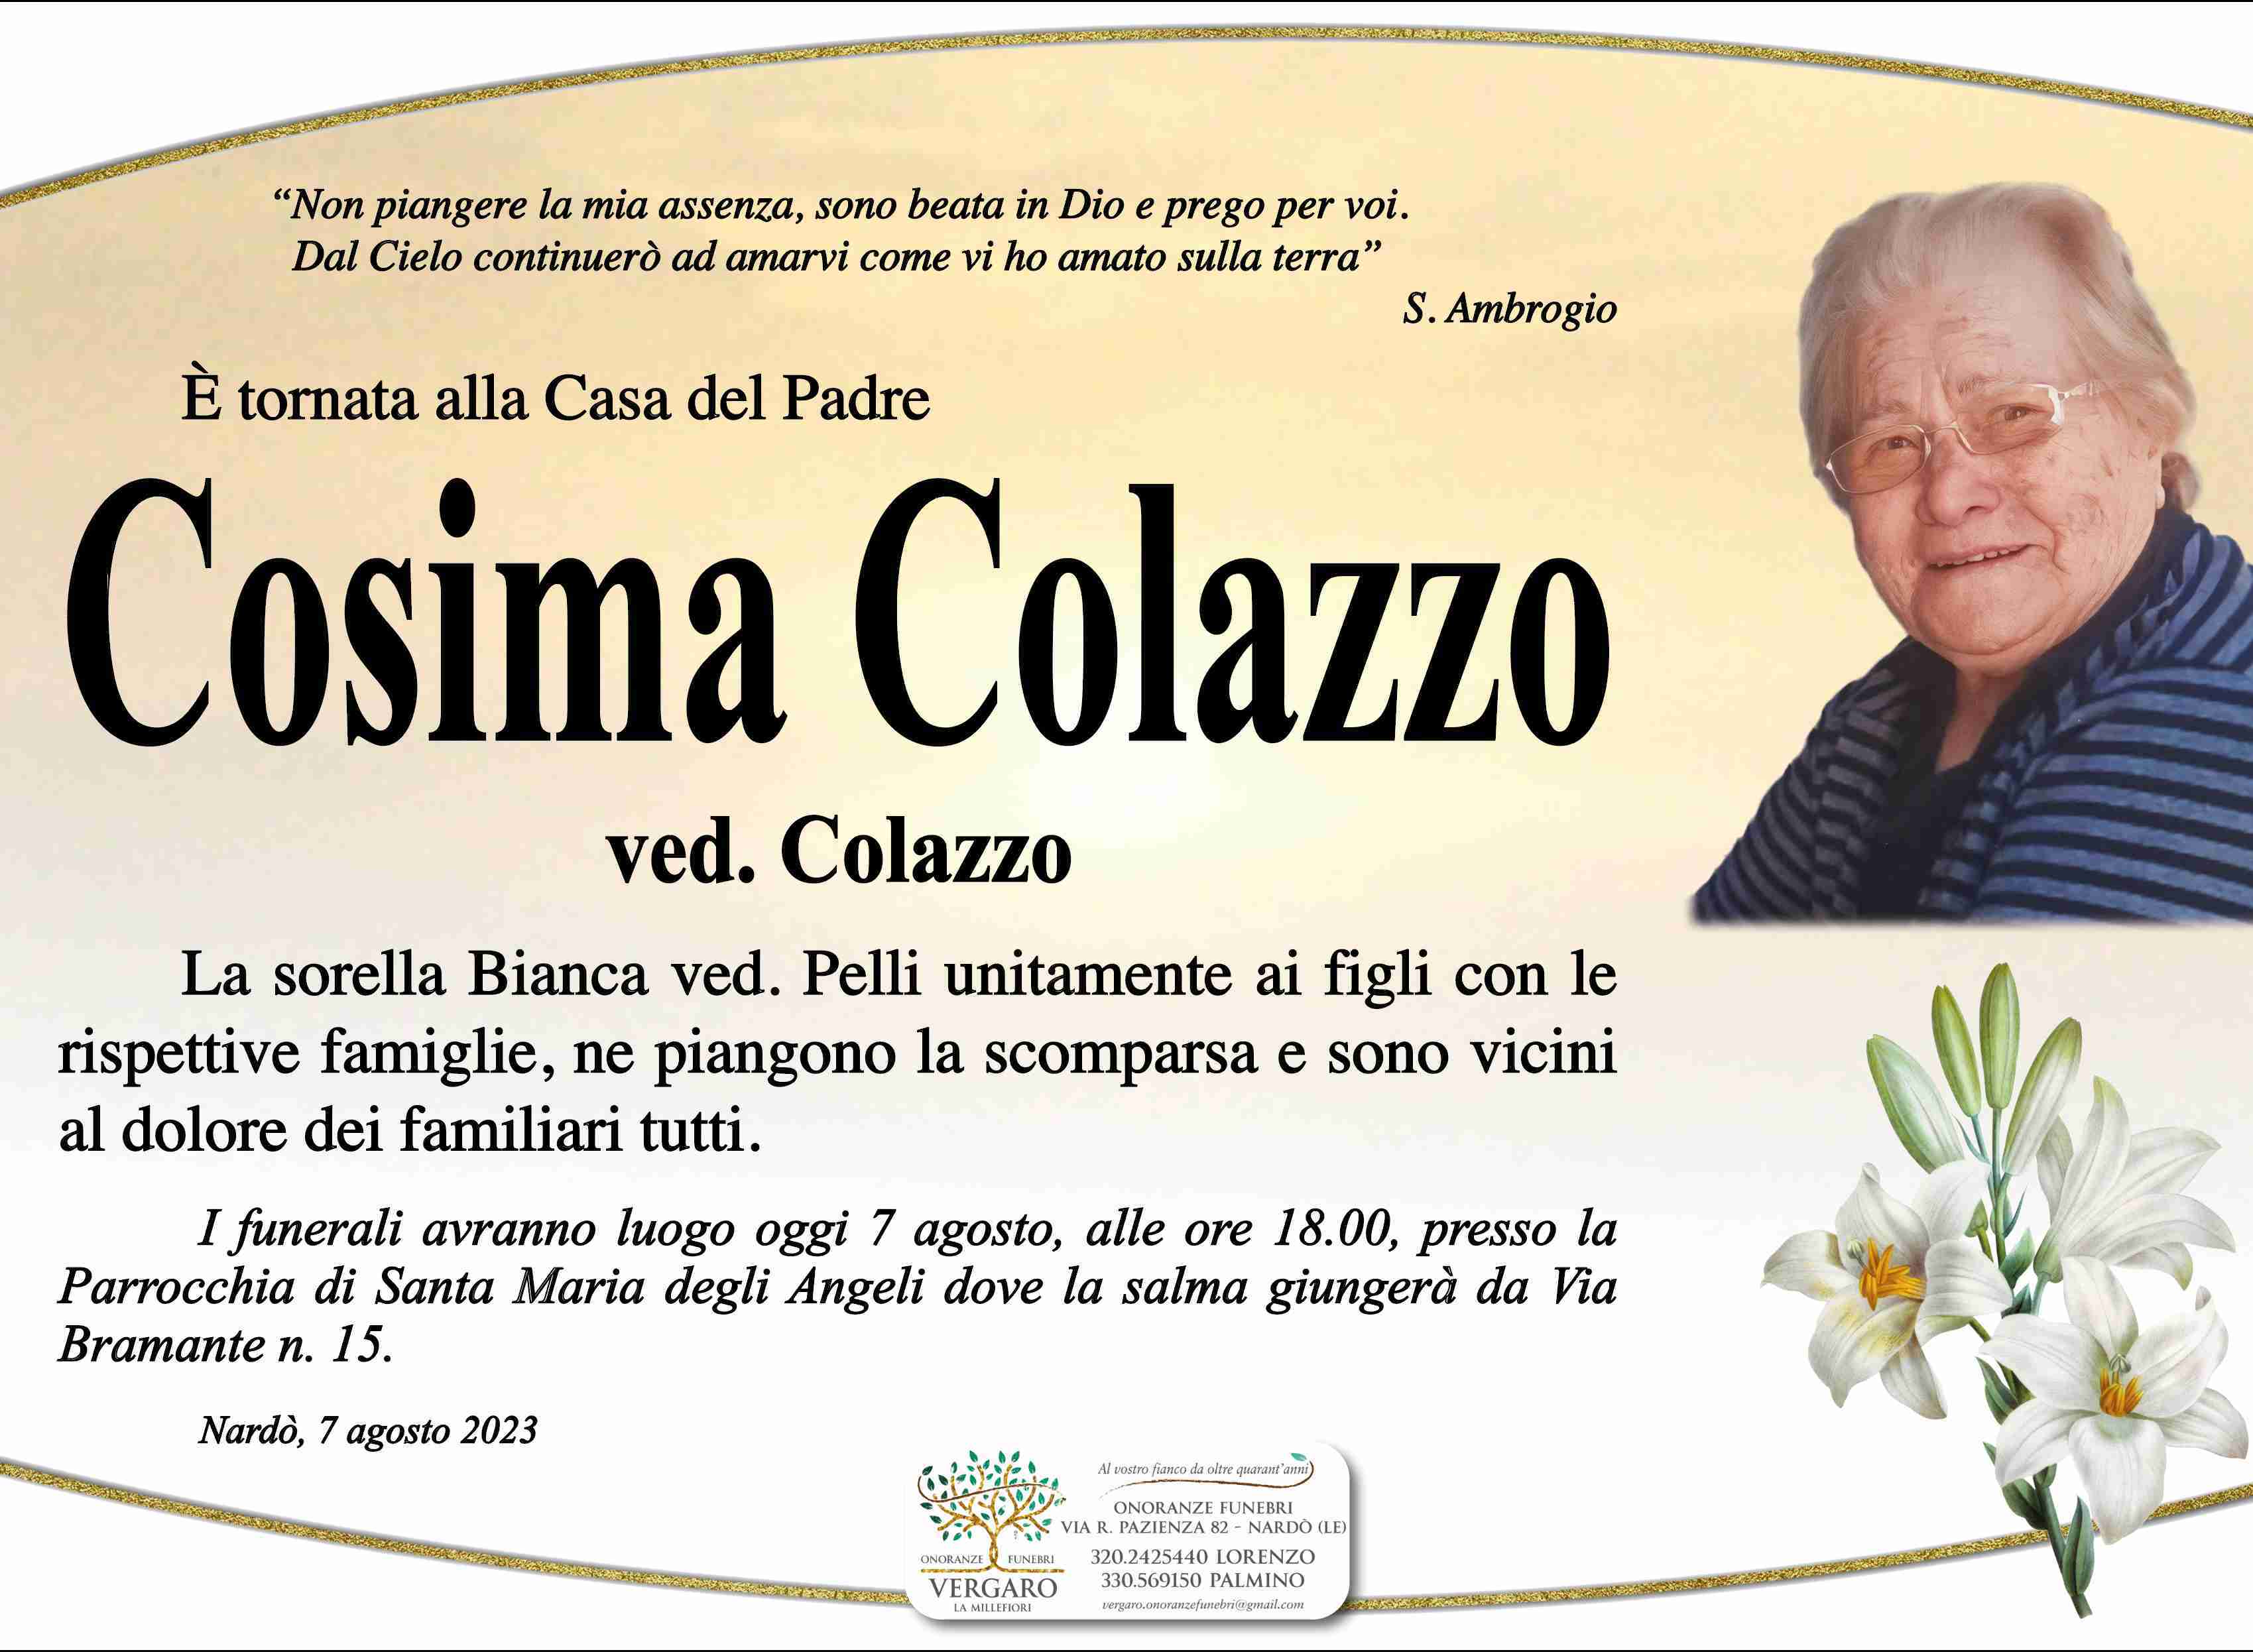 Cosima Colazzo